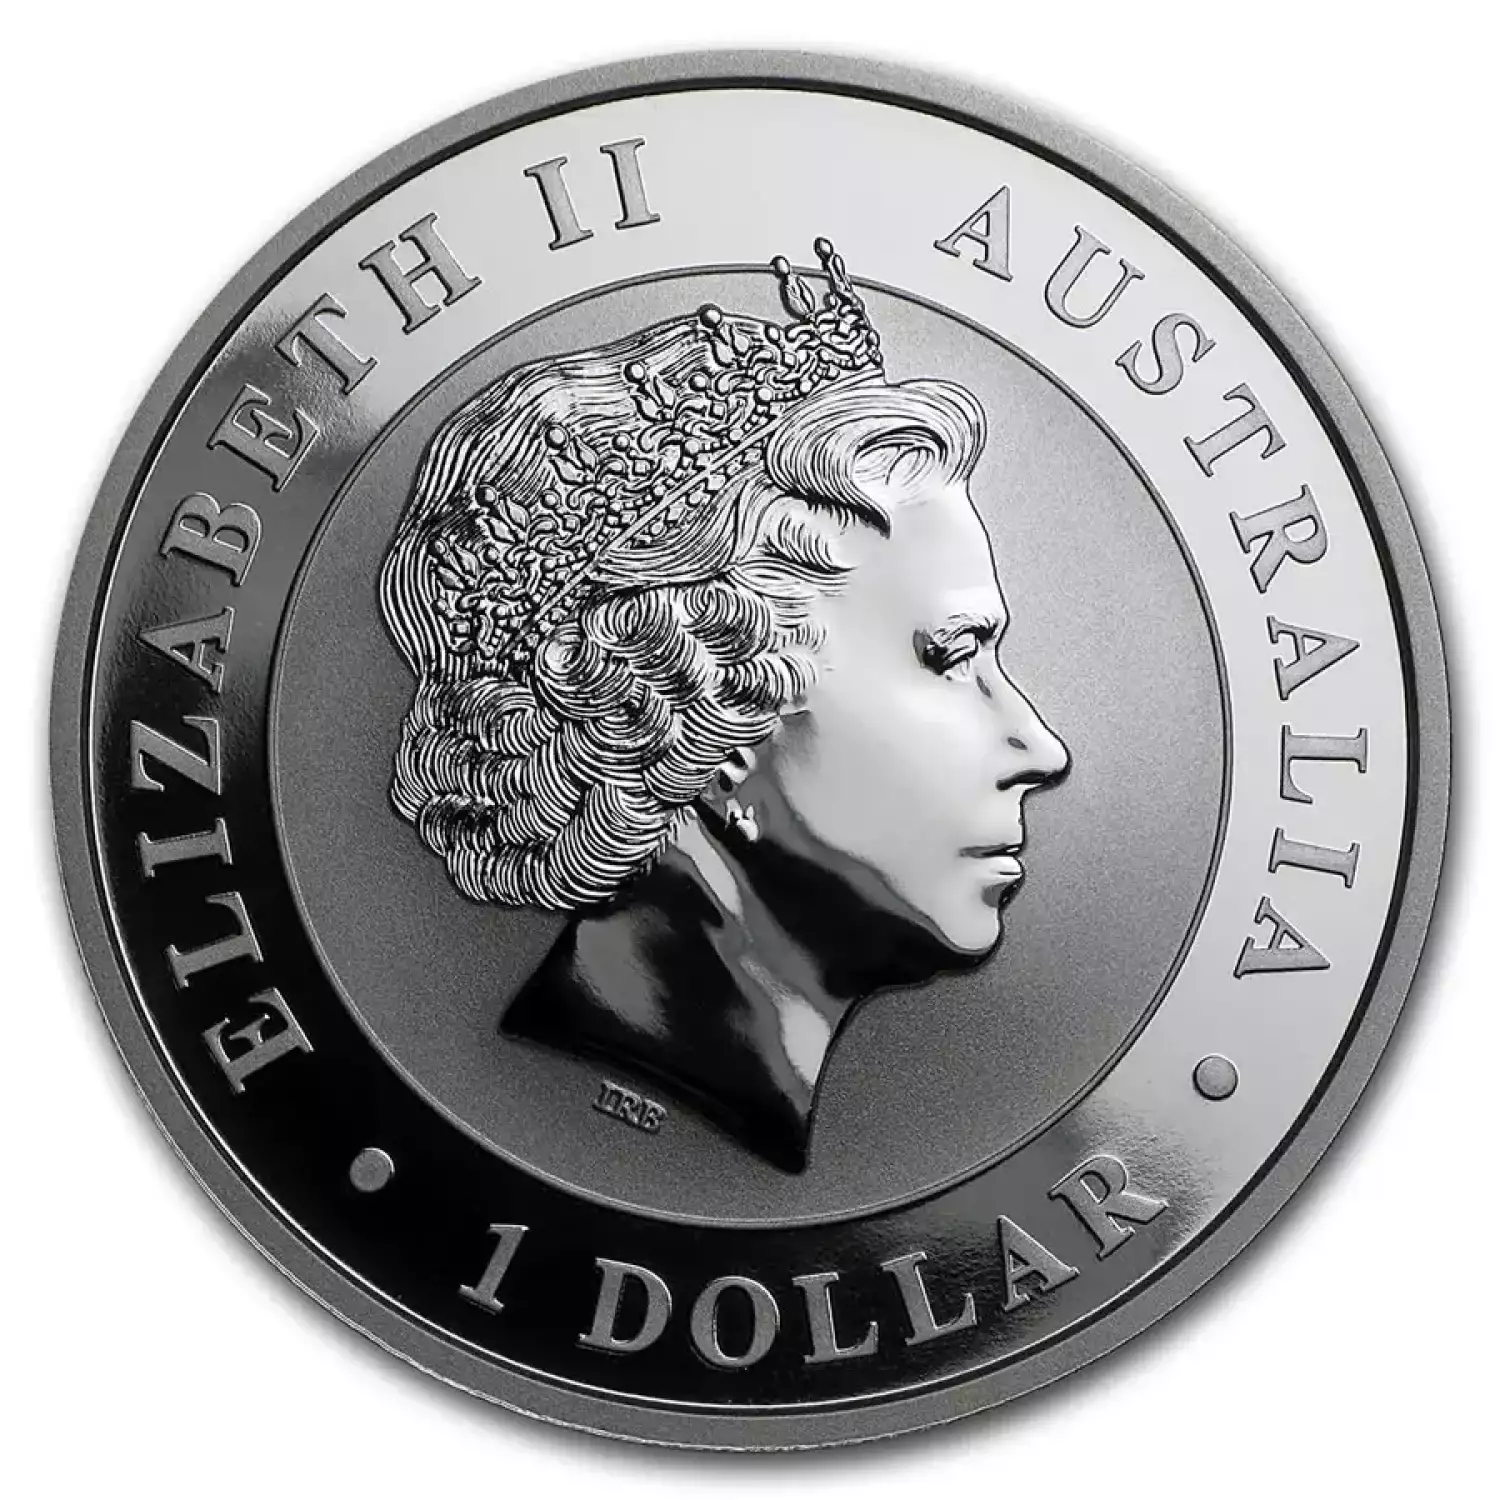 2016 1oz Australian Perth Mint Silver Kookaburra (2)